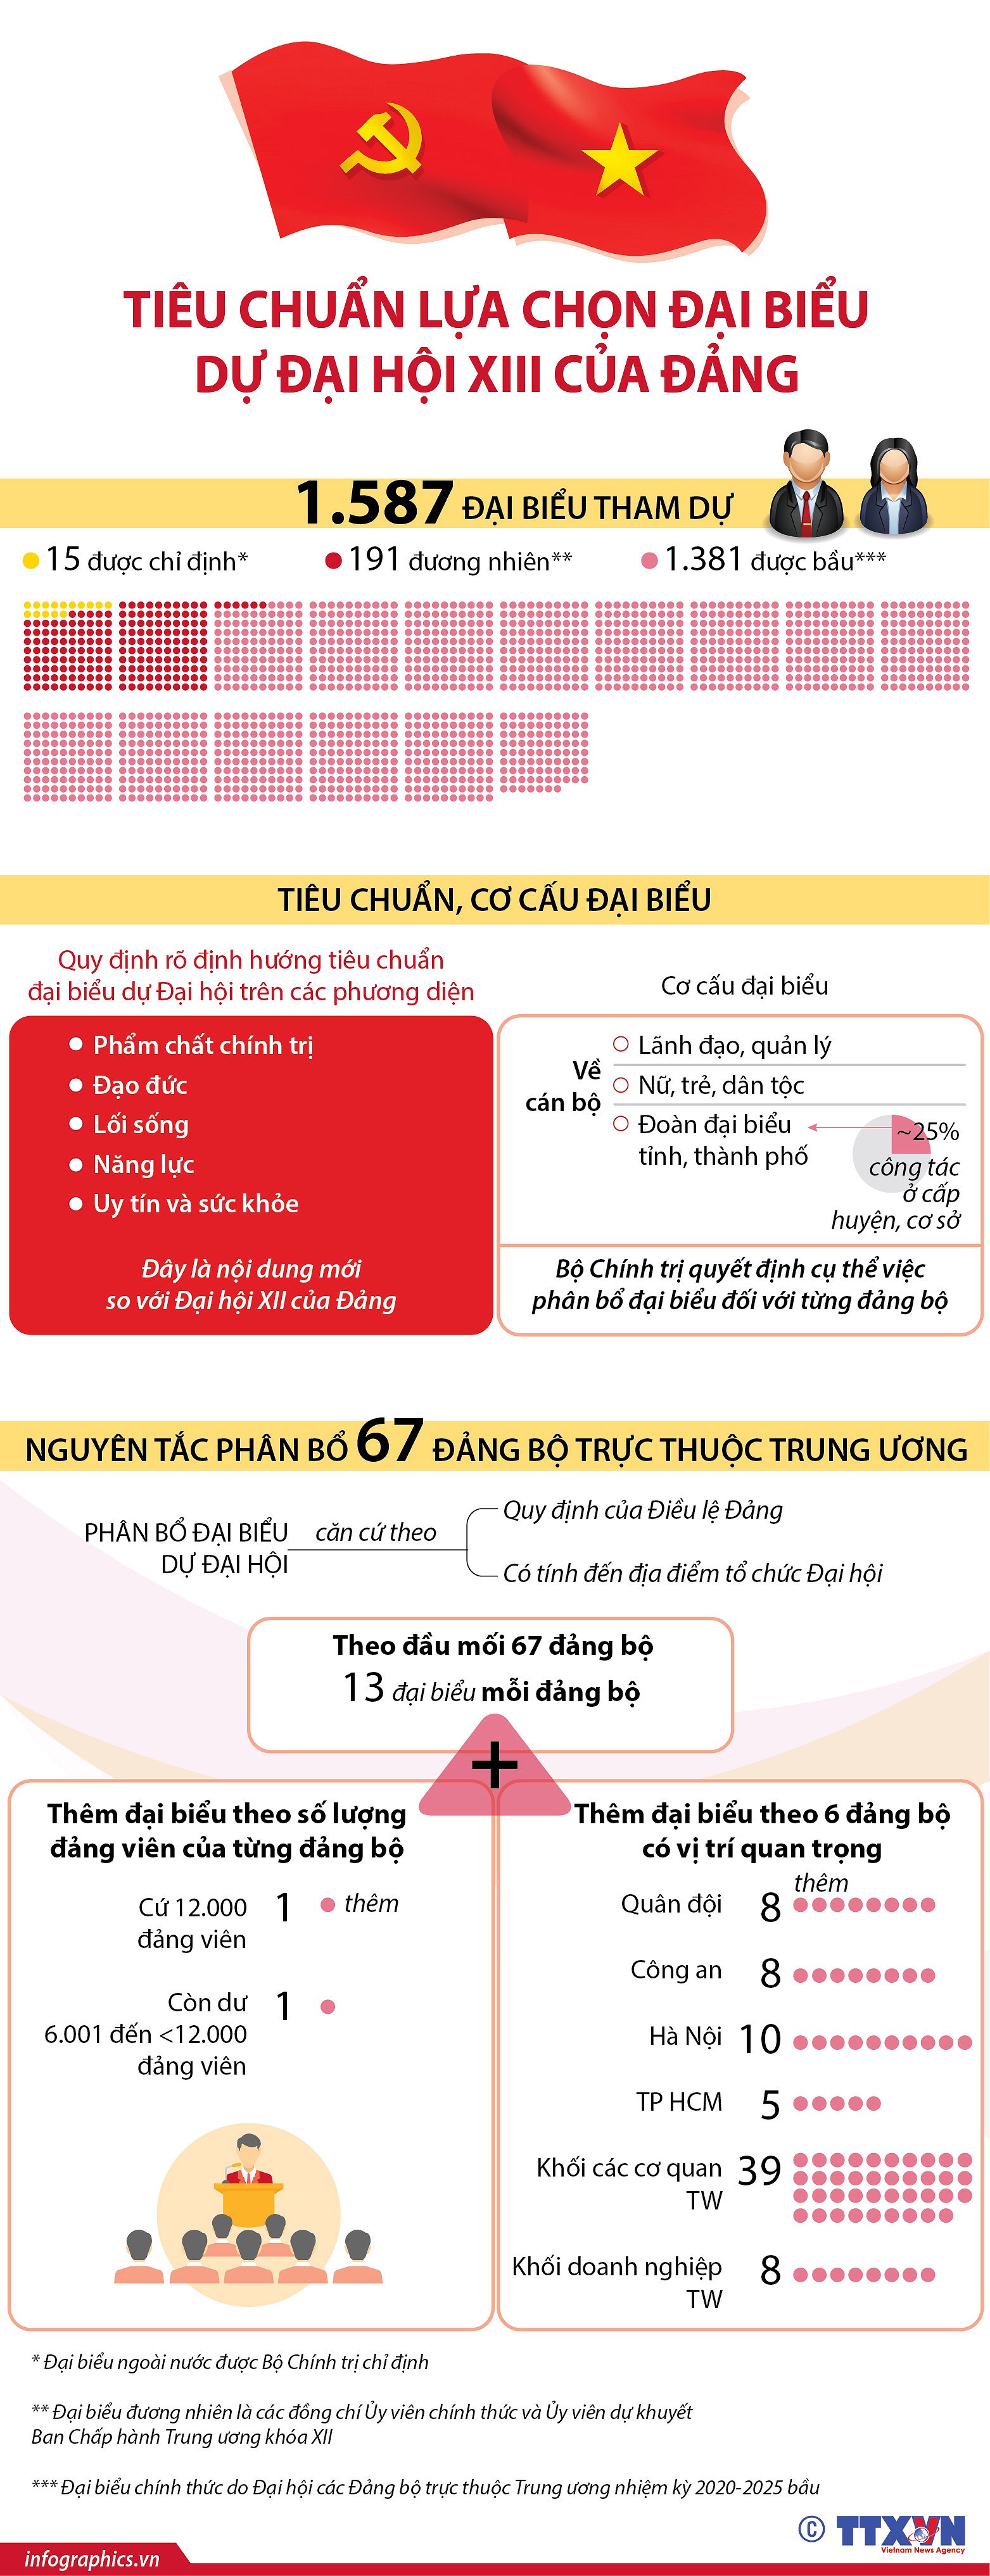 [Infographics] Tieu chuan lua chon dai bieu du Dai hoi XIII cua Dang hinh anh 1